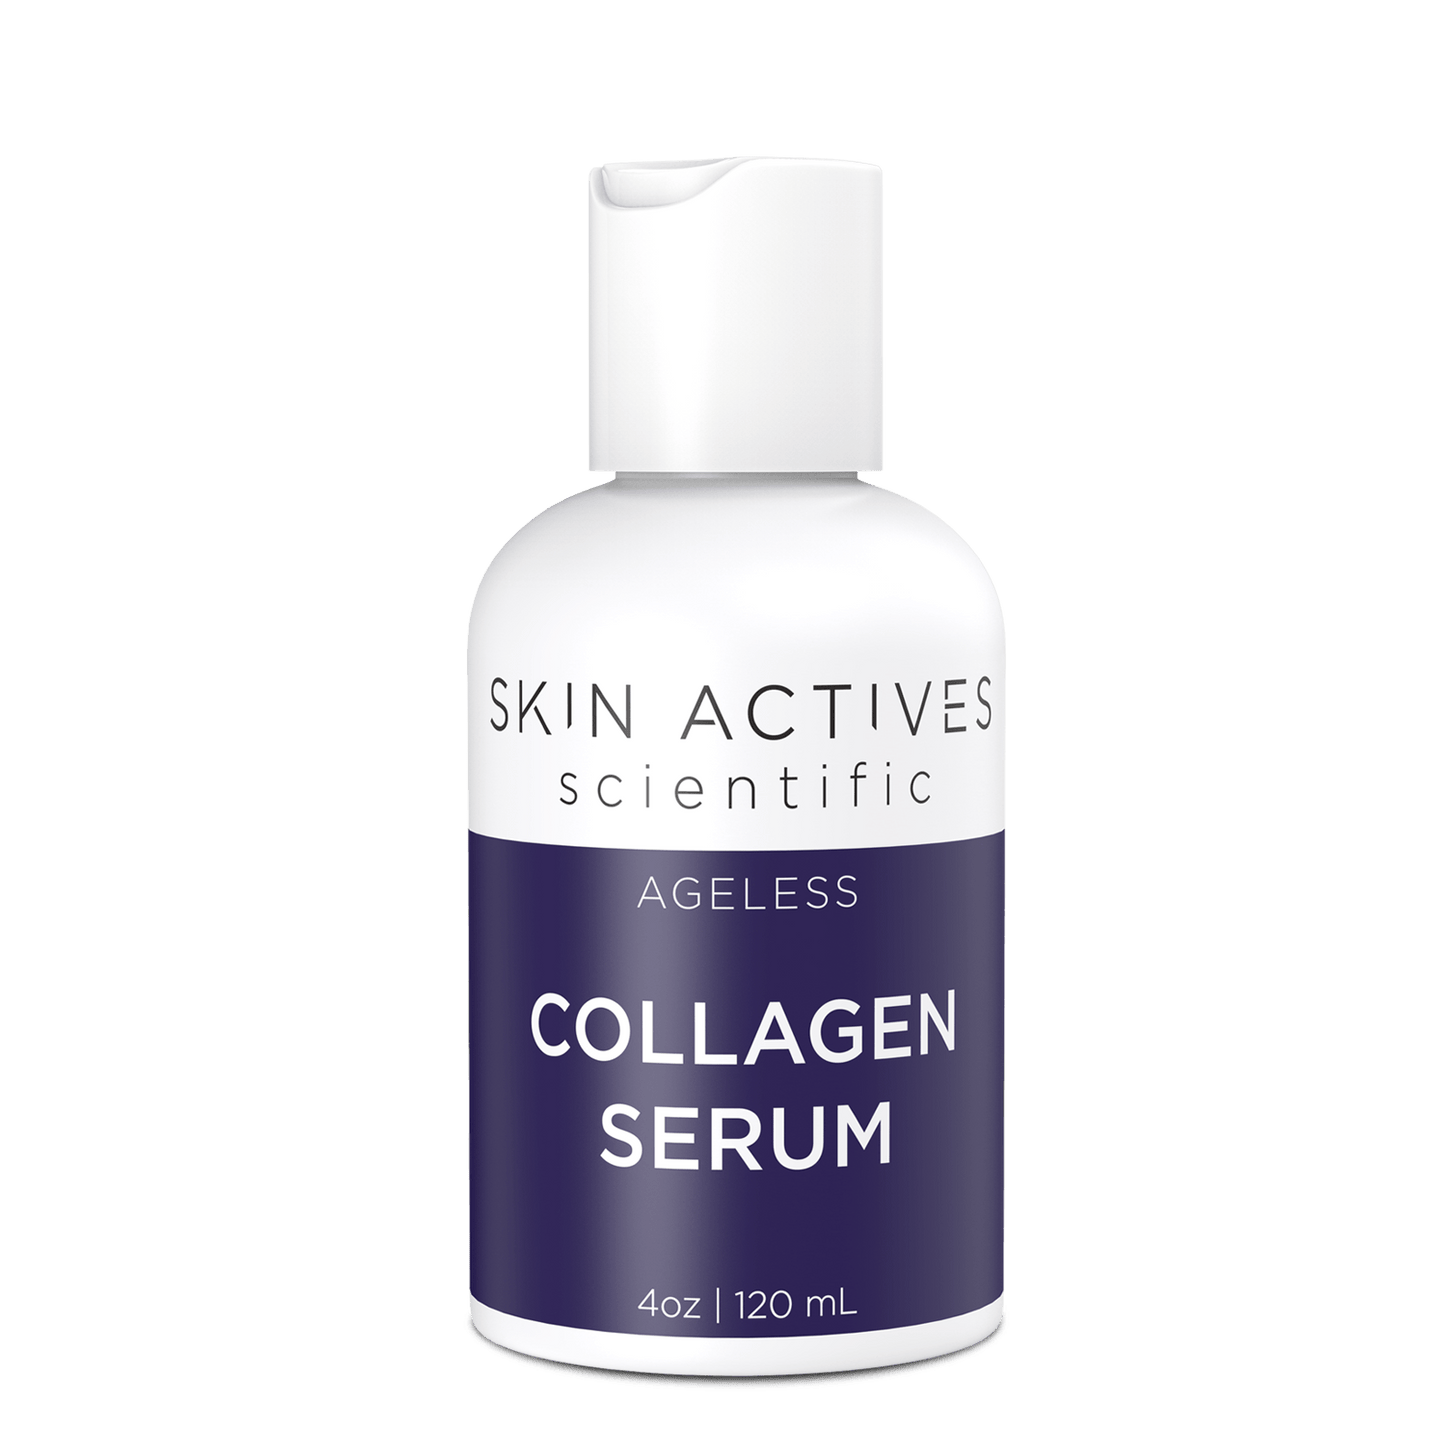 Ageless Collagen Serum